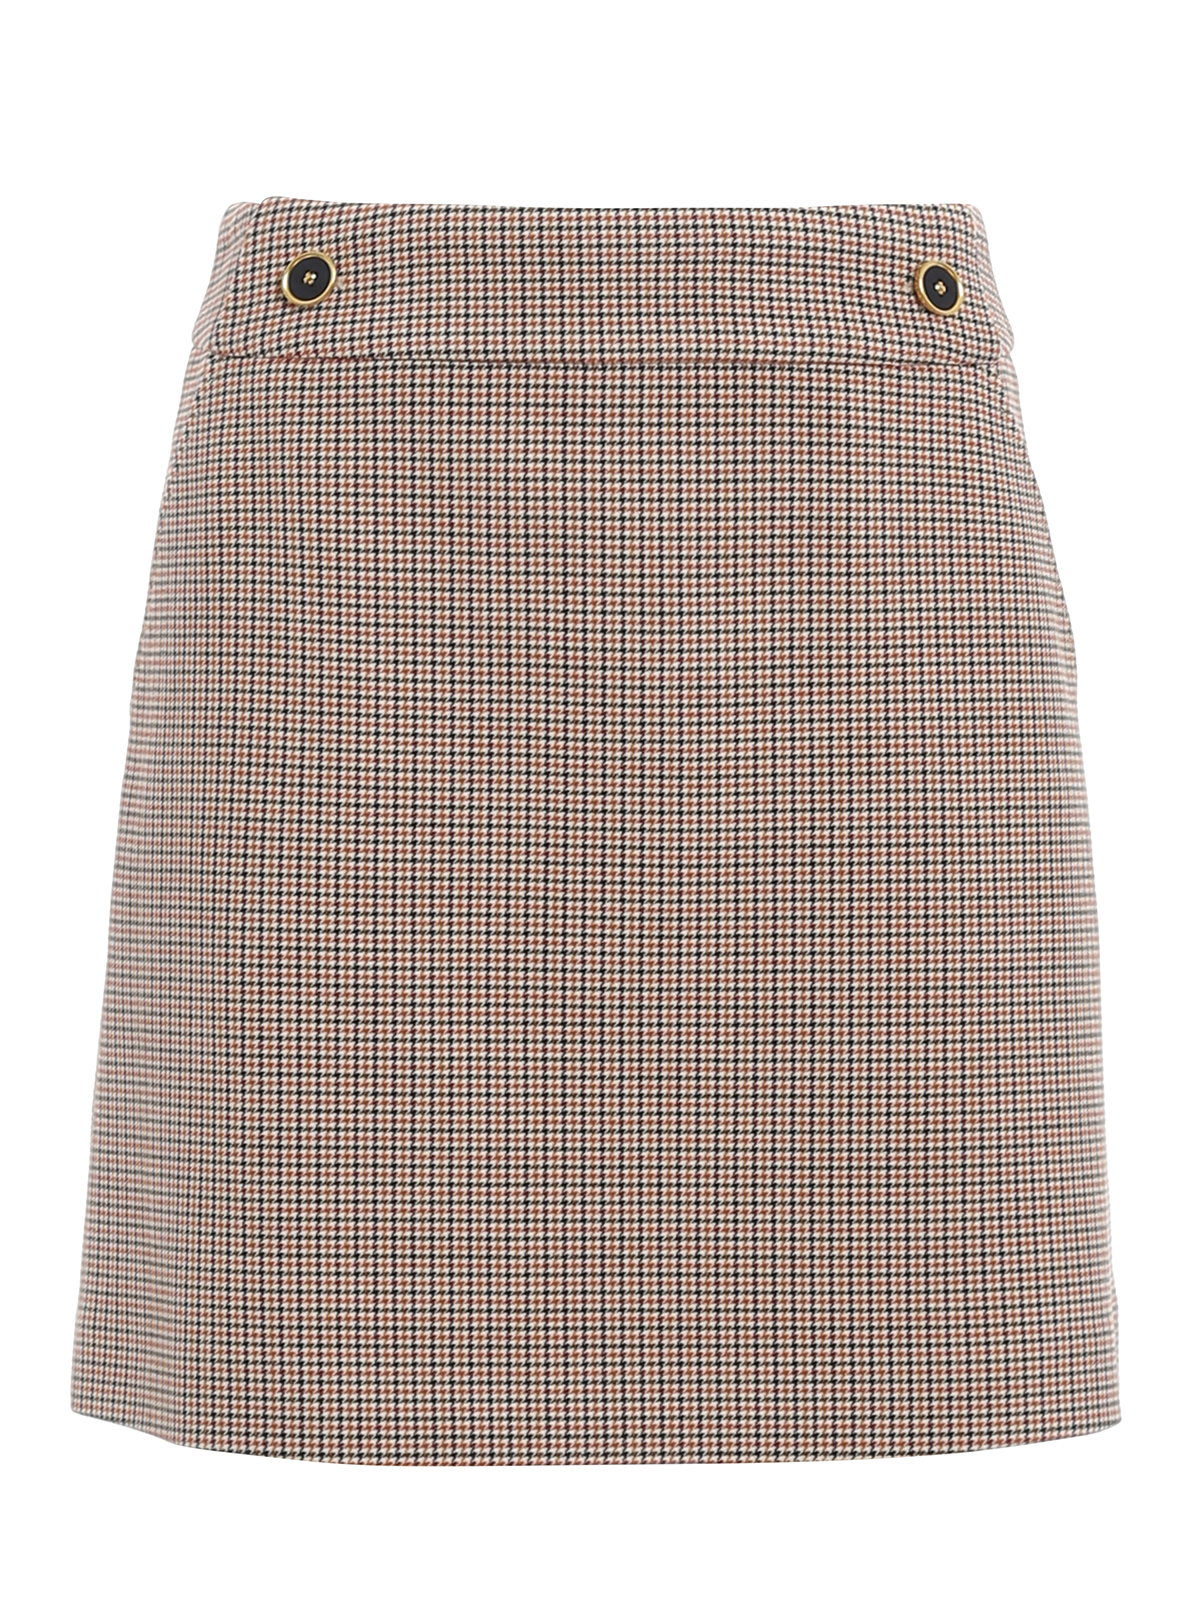 Mini skirts Tory Burch - Plaid mini skirt - 760520820803 | iKRIX.com